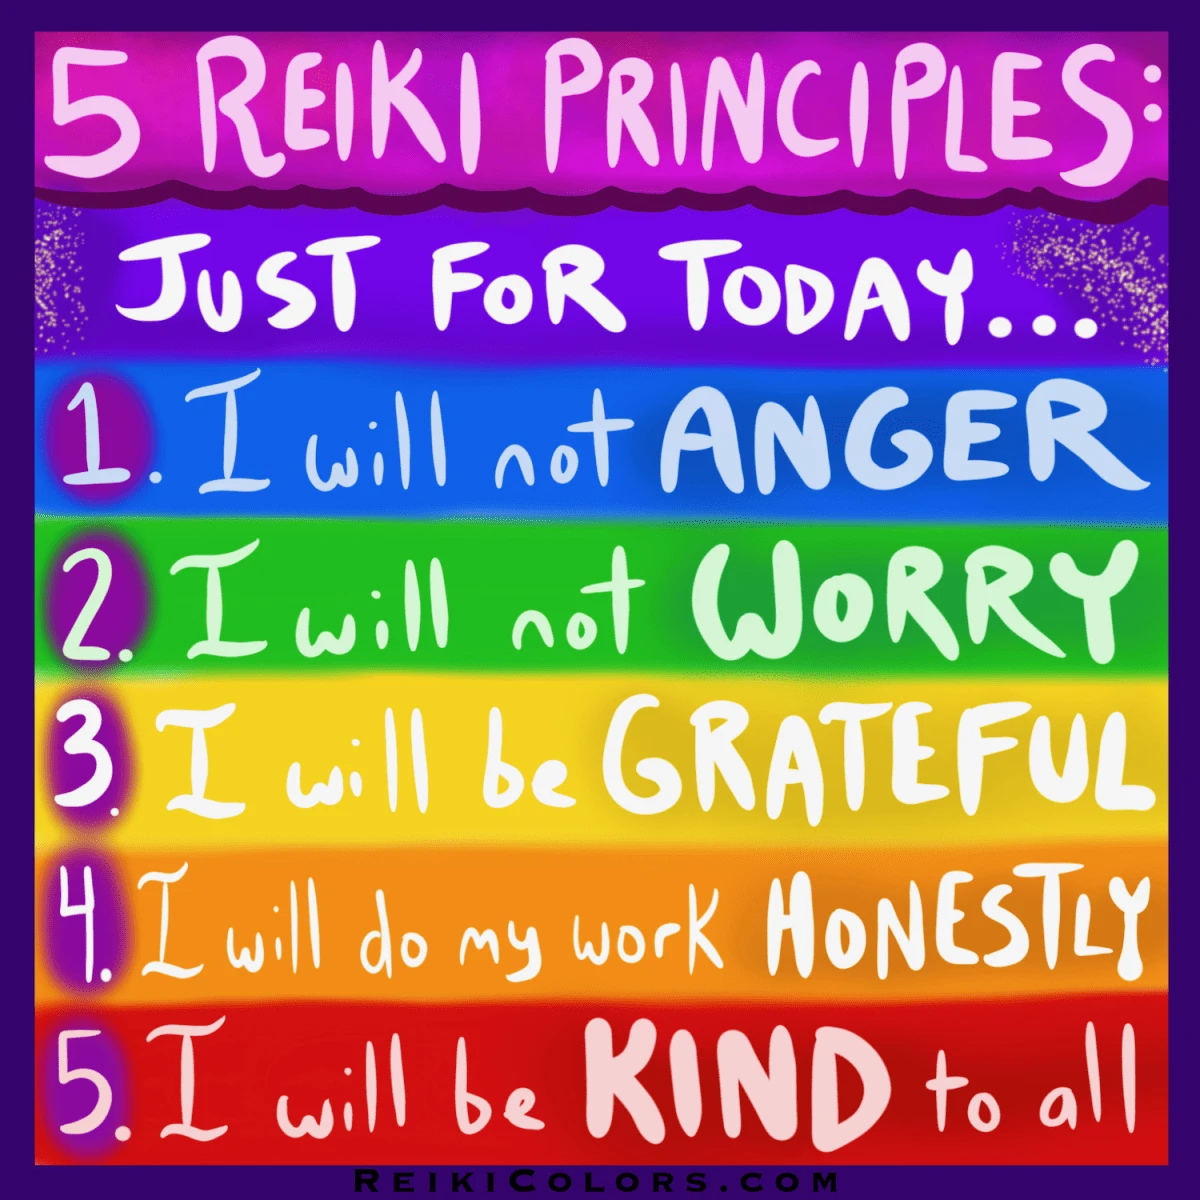 Reiki principles